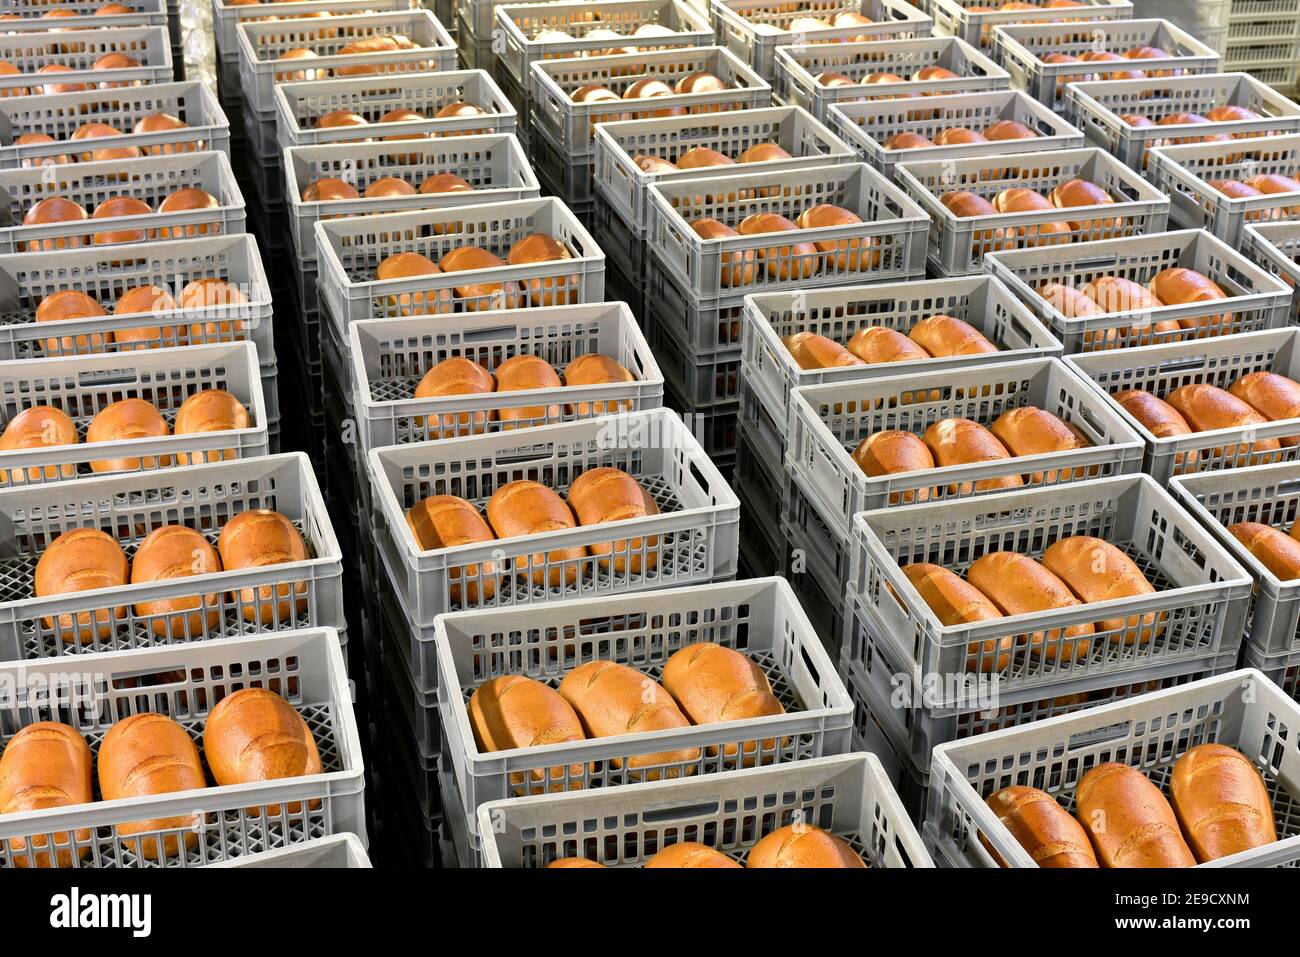 Lagerung und Transport von frisch gebackenen Brotsorten in einer Bäckerei zum Verkauf - industrielle Lebensmittelproduktion Stockfoto